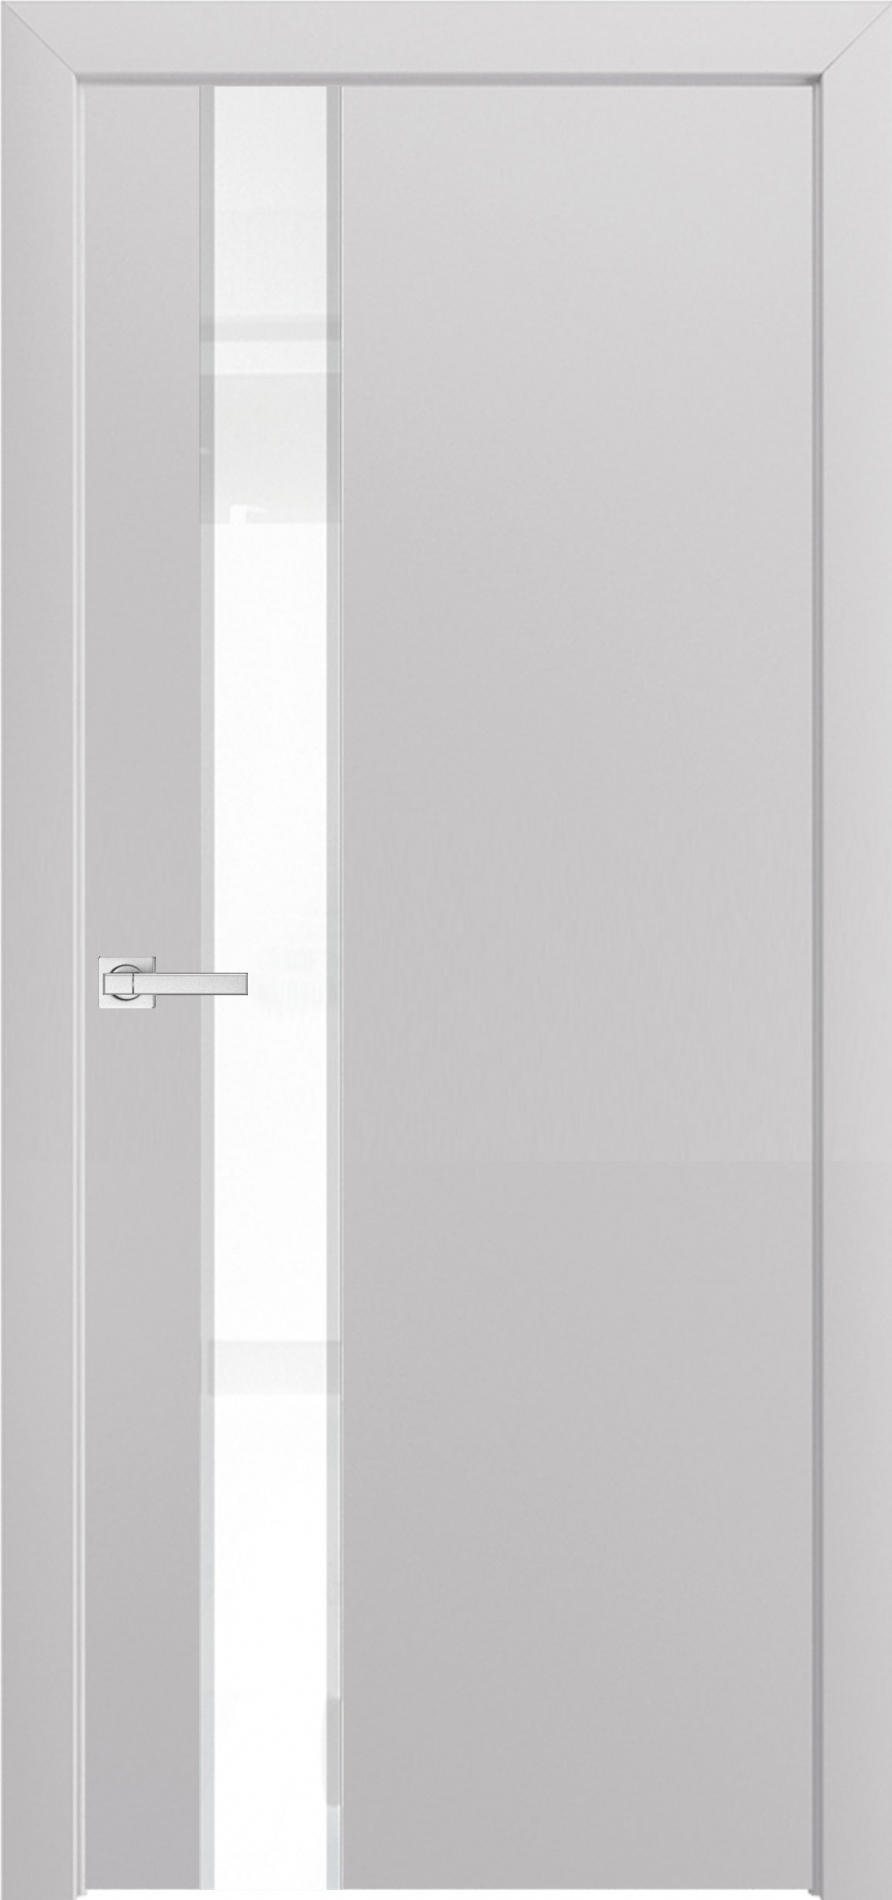 межкомнатные двери  Дариано Вита-2 с фацетом эмаль